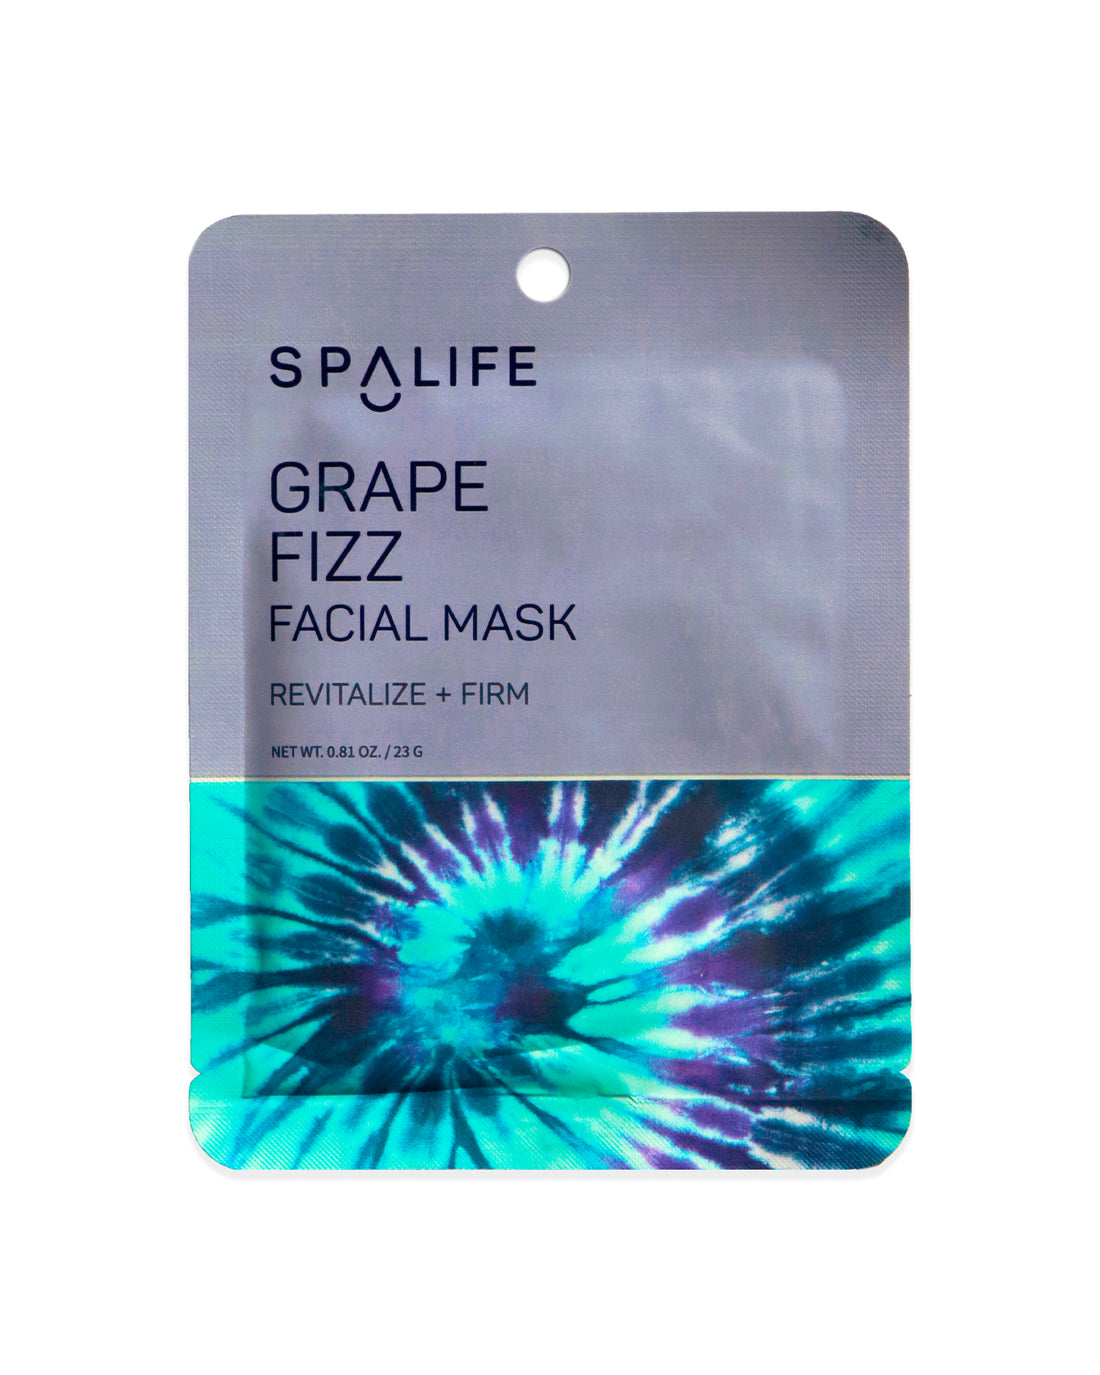 Grape_fizz_facial_mask_packet-391